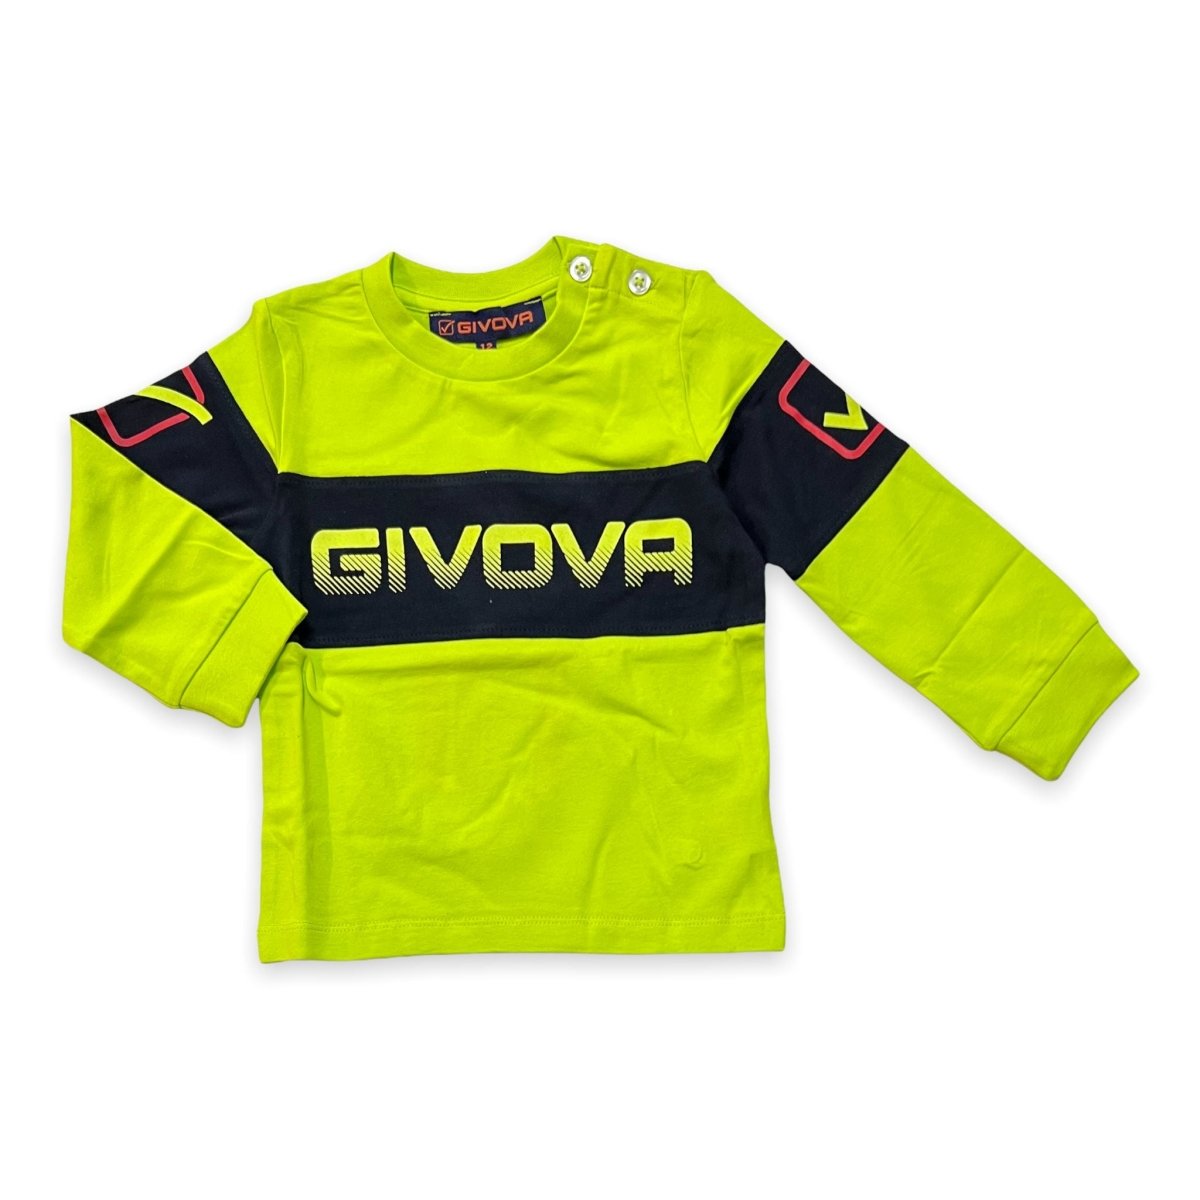 T-Shirt Neonato Givova - Mstore016 - T-shirt Neonato - Givova